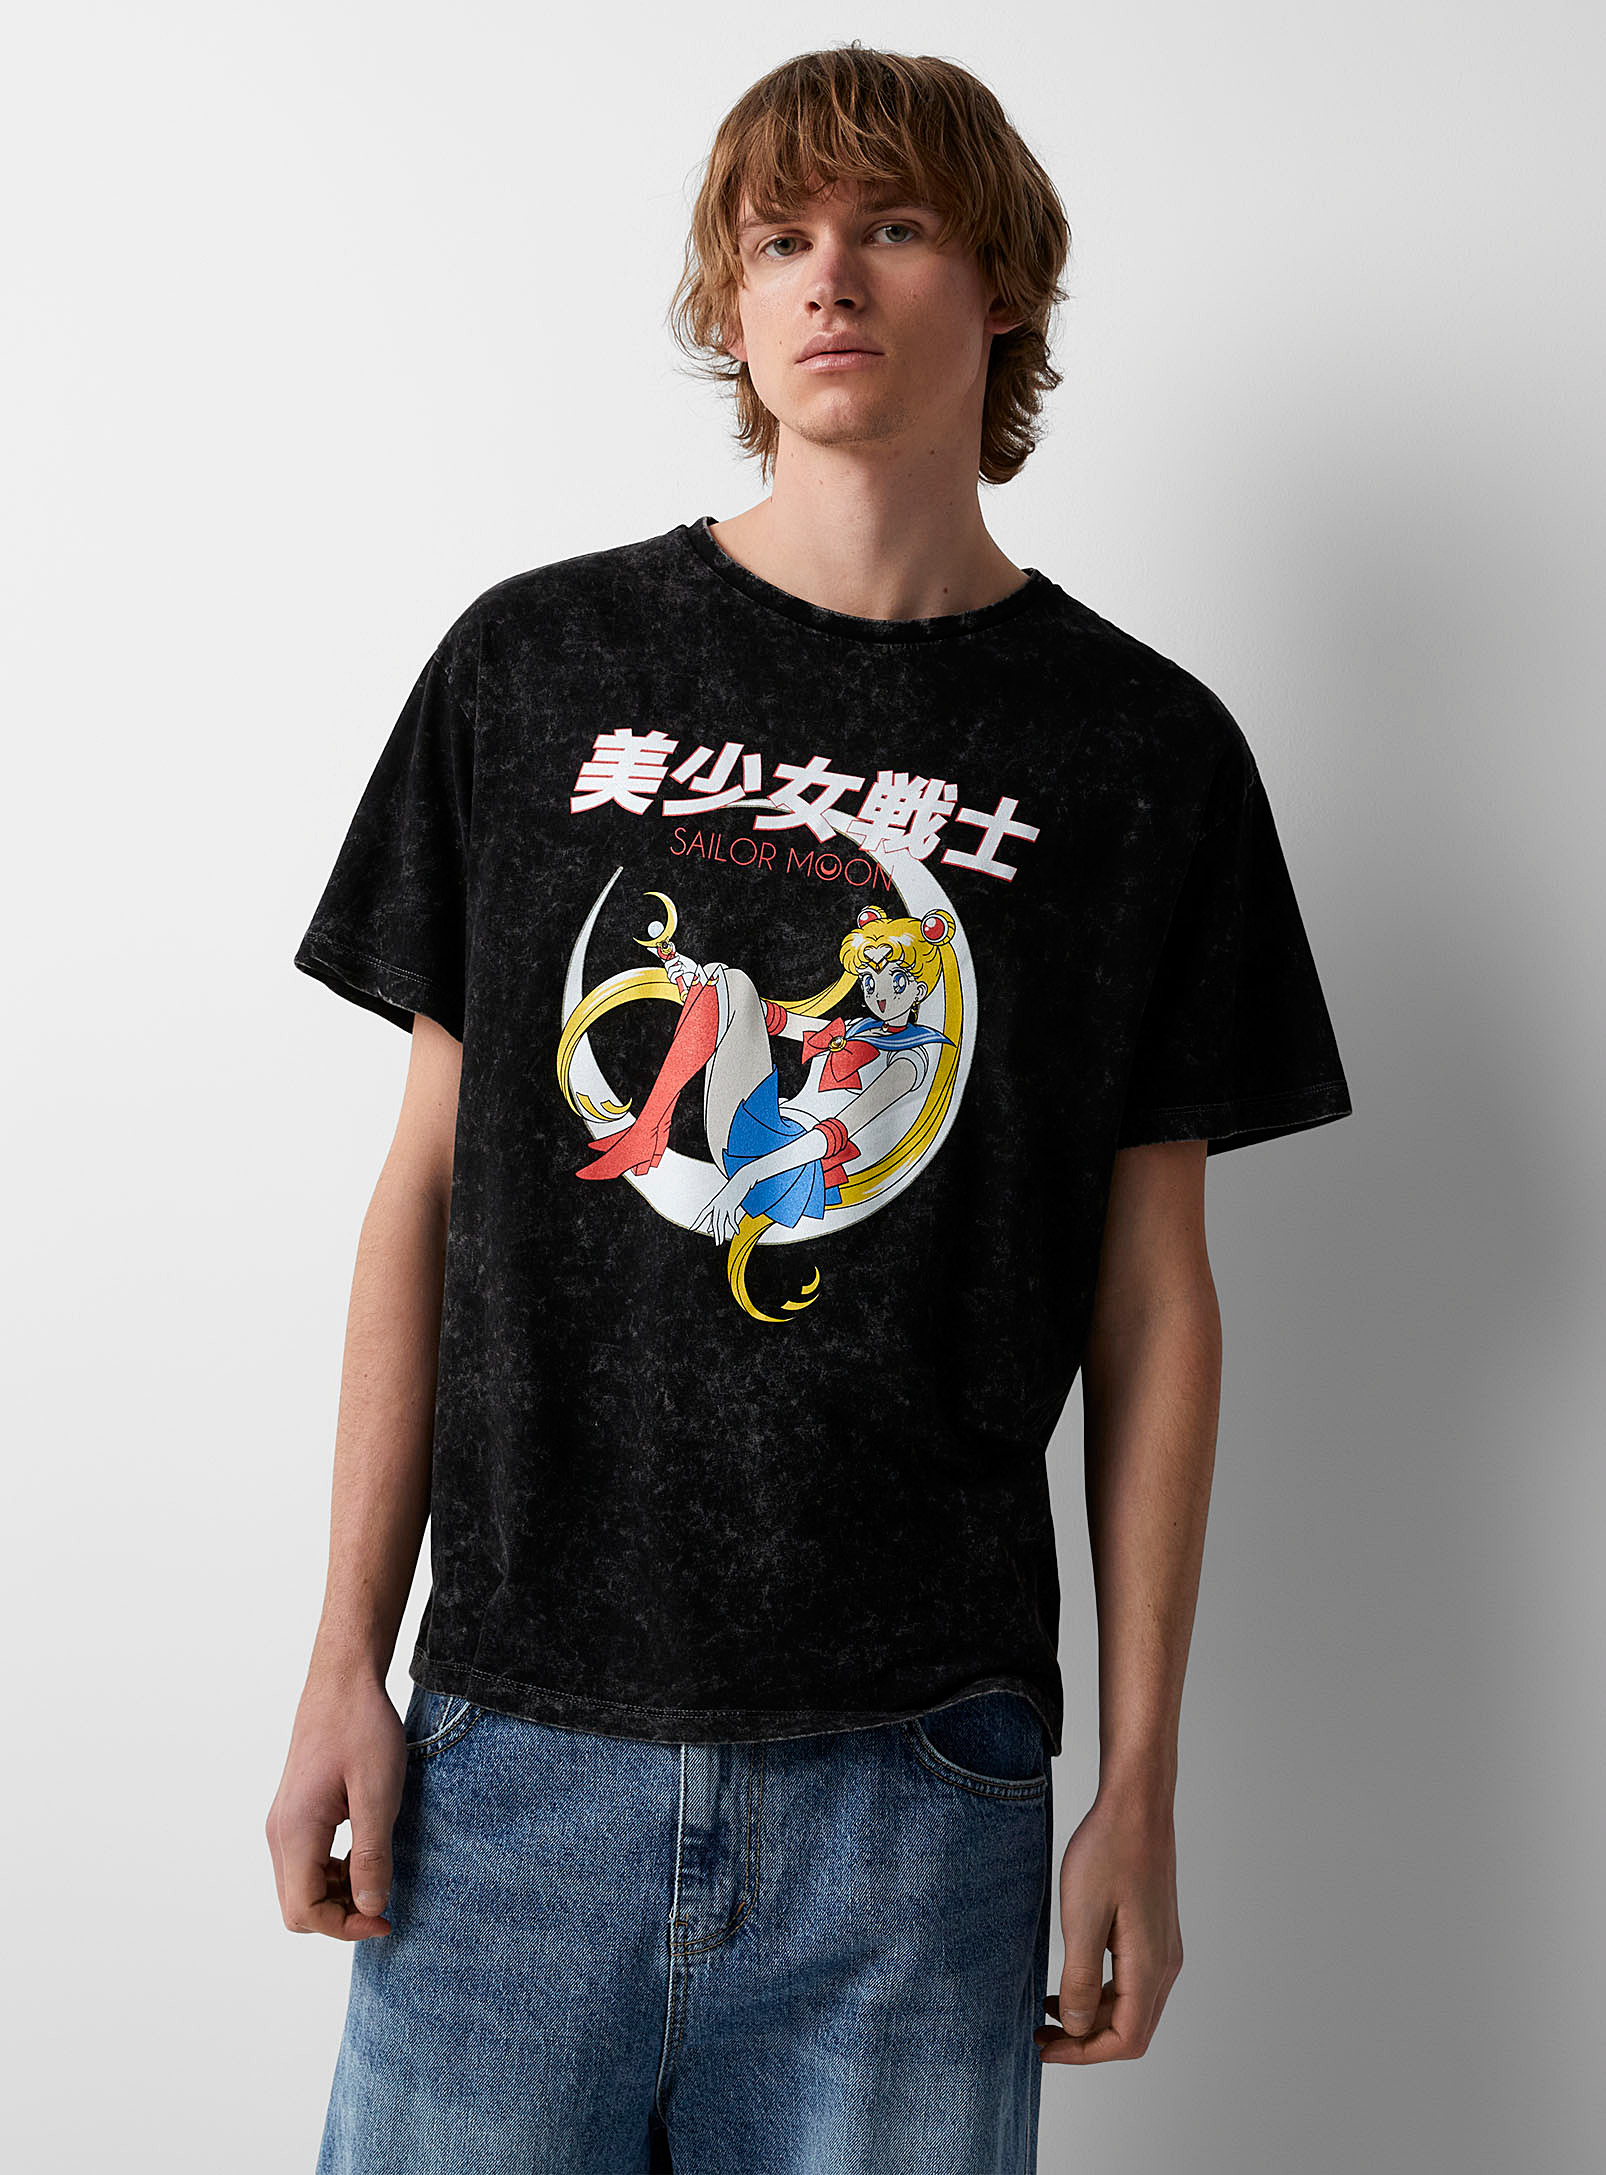 Djab - Le t-shirt délavé Sailor Moon